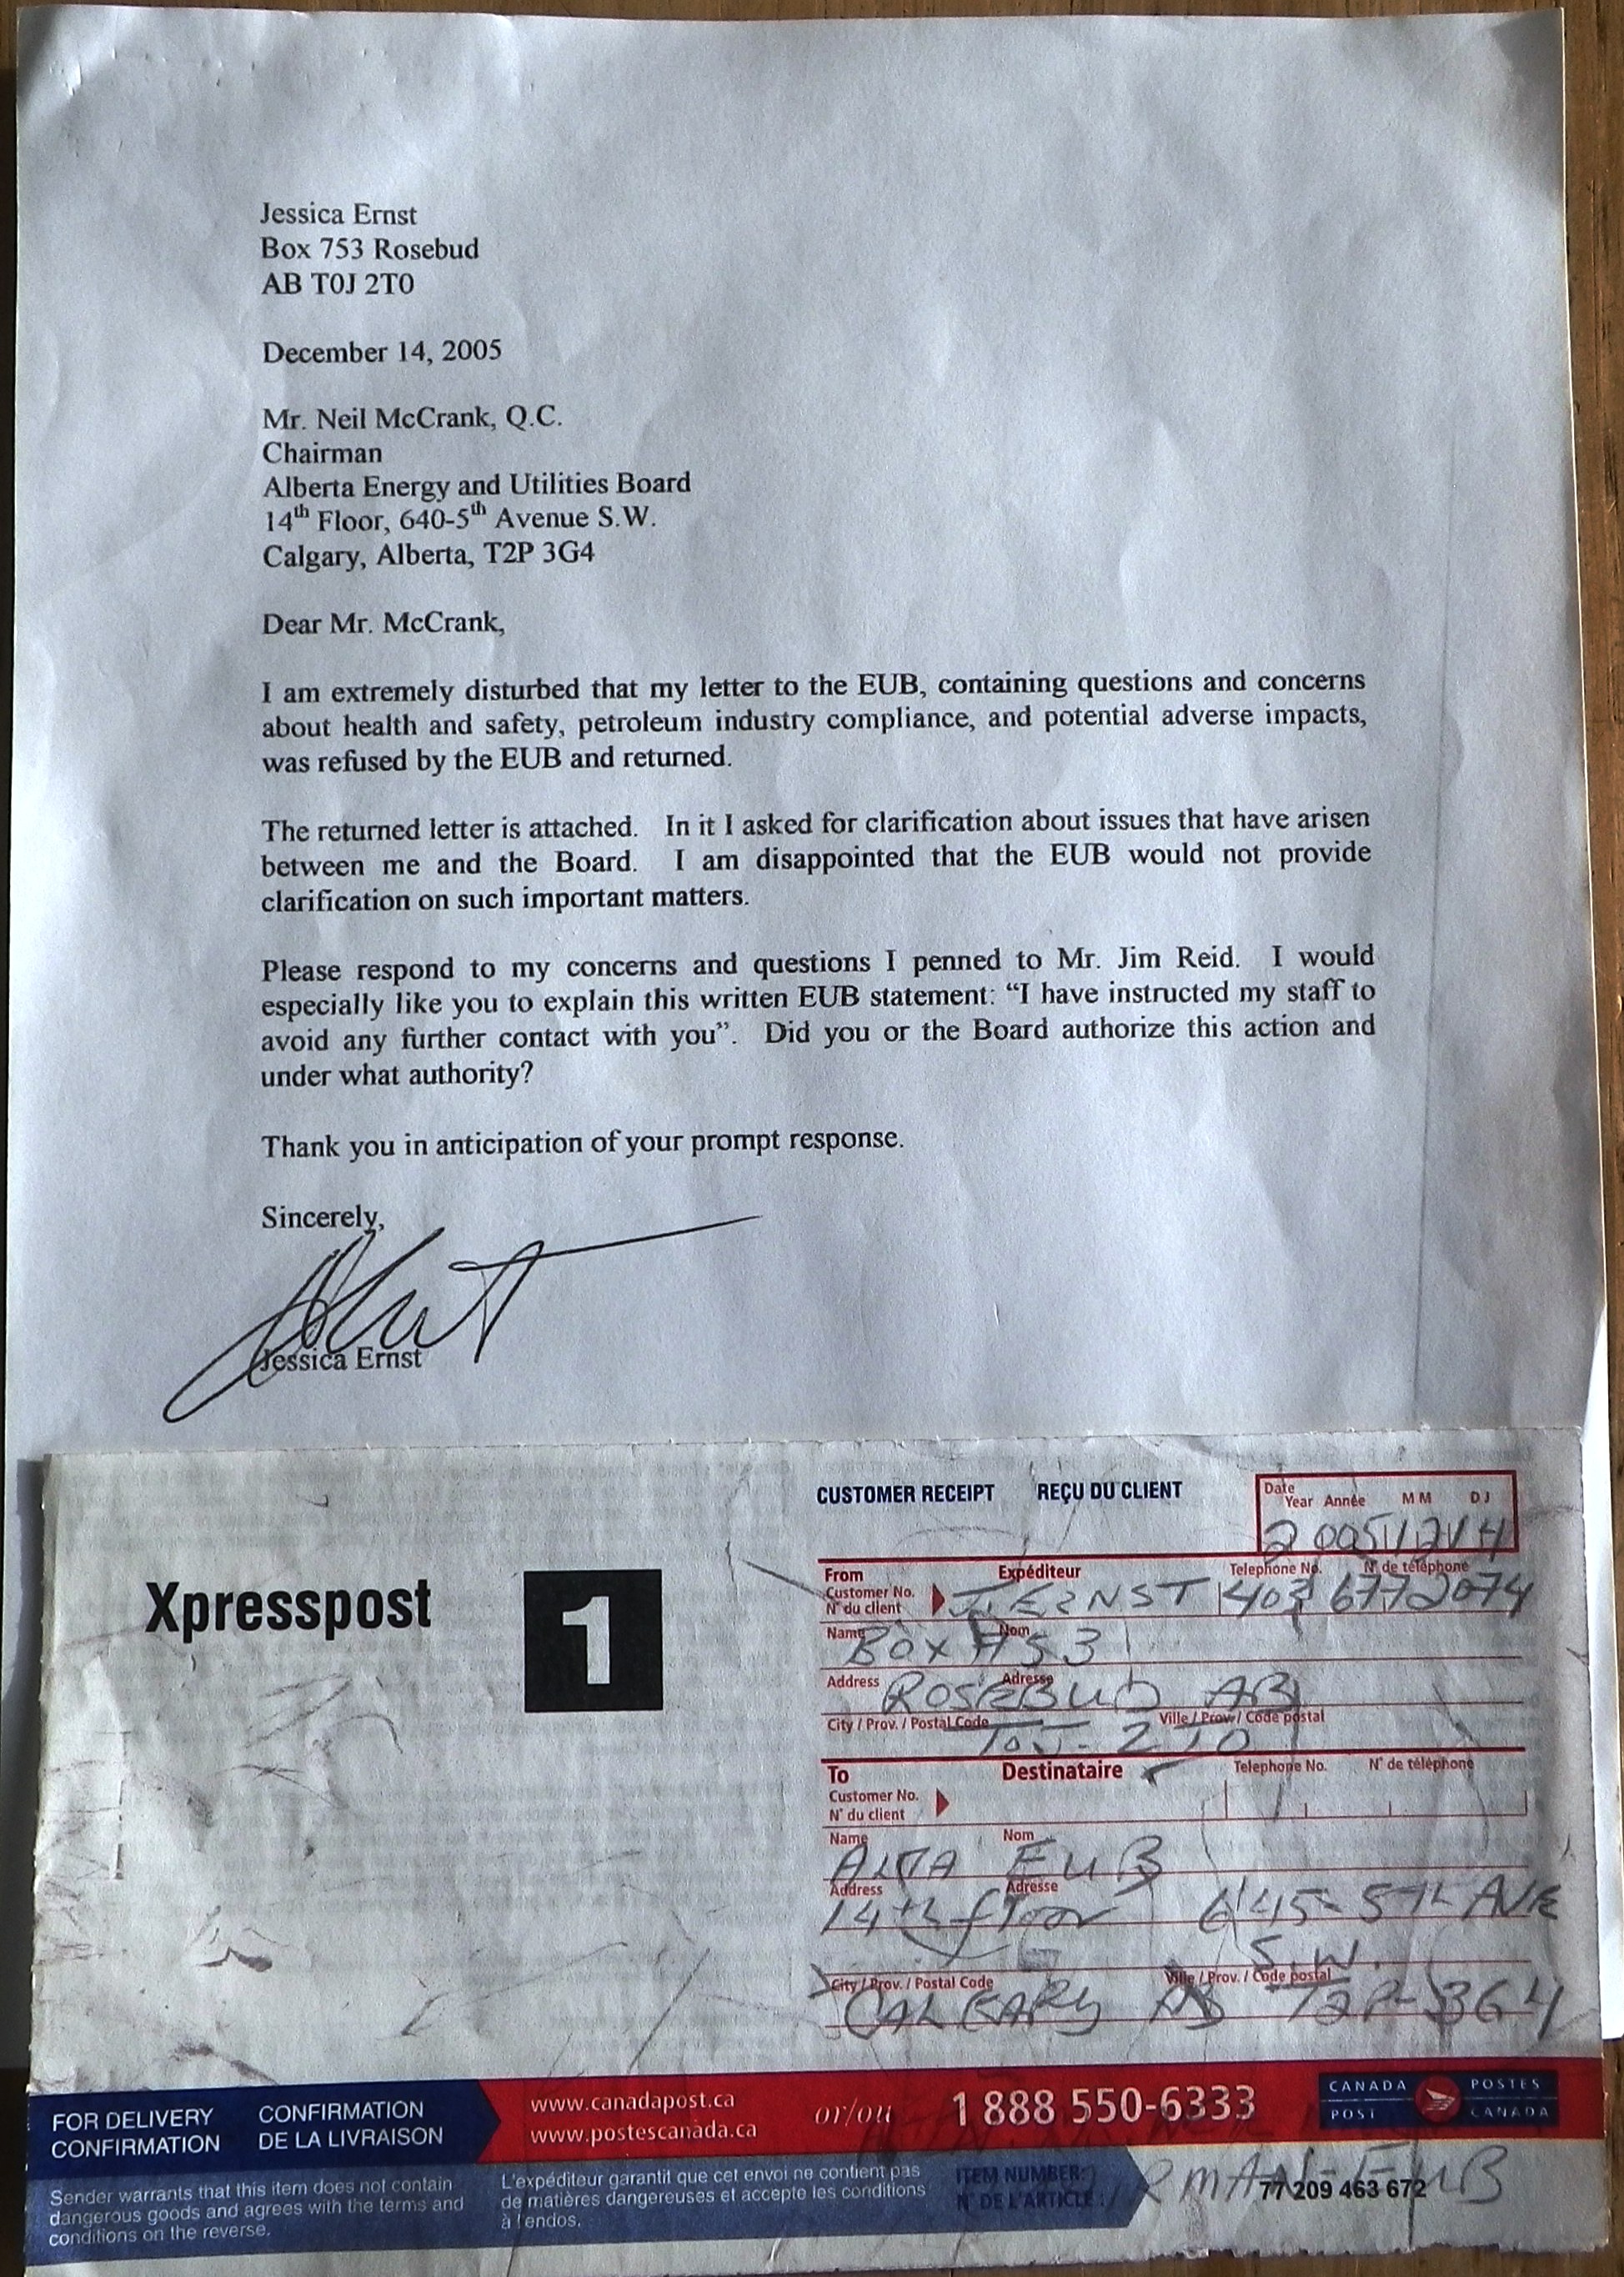 2005 12 14 Ernst letter to McCrank Alberta energy regulator refusing mail from harmed citizens